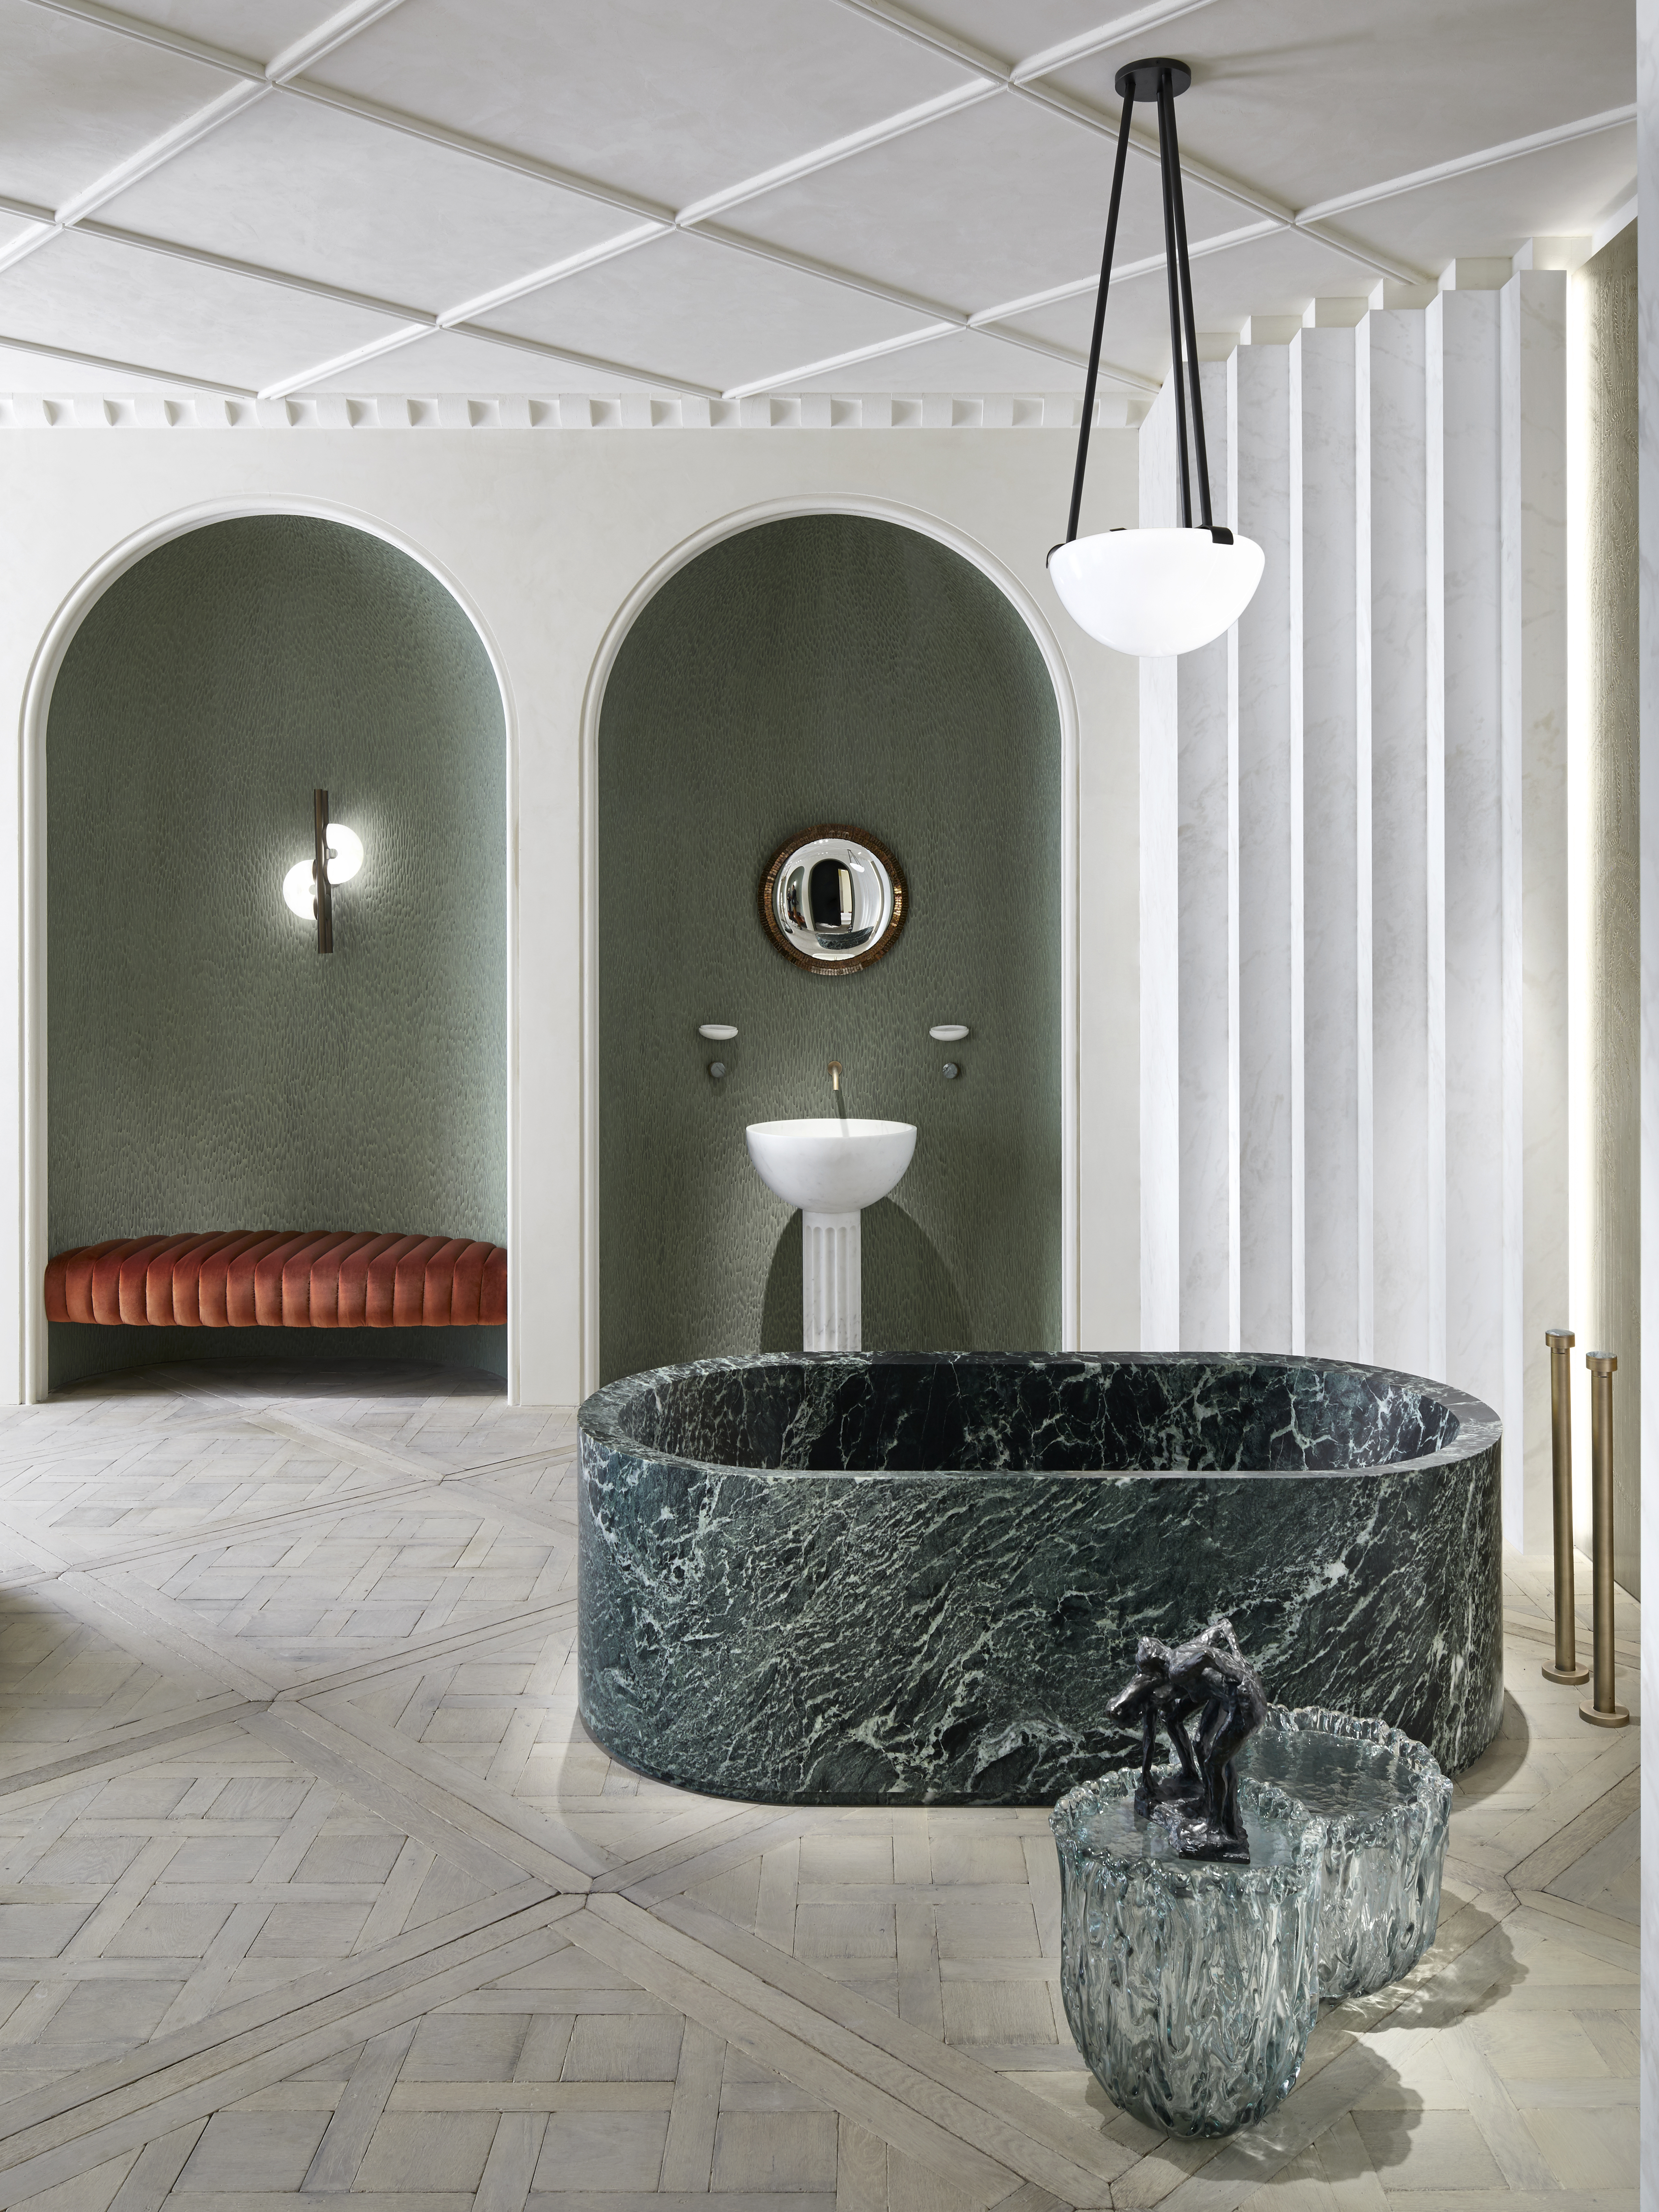 AD Intérieurs 2019, Humbert & Poyet, La salle de bain néo-classique